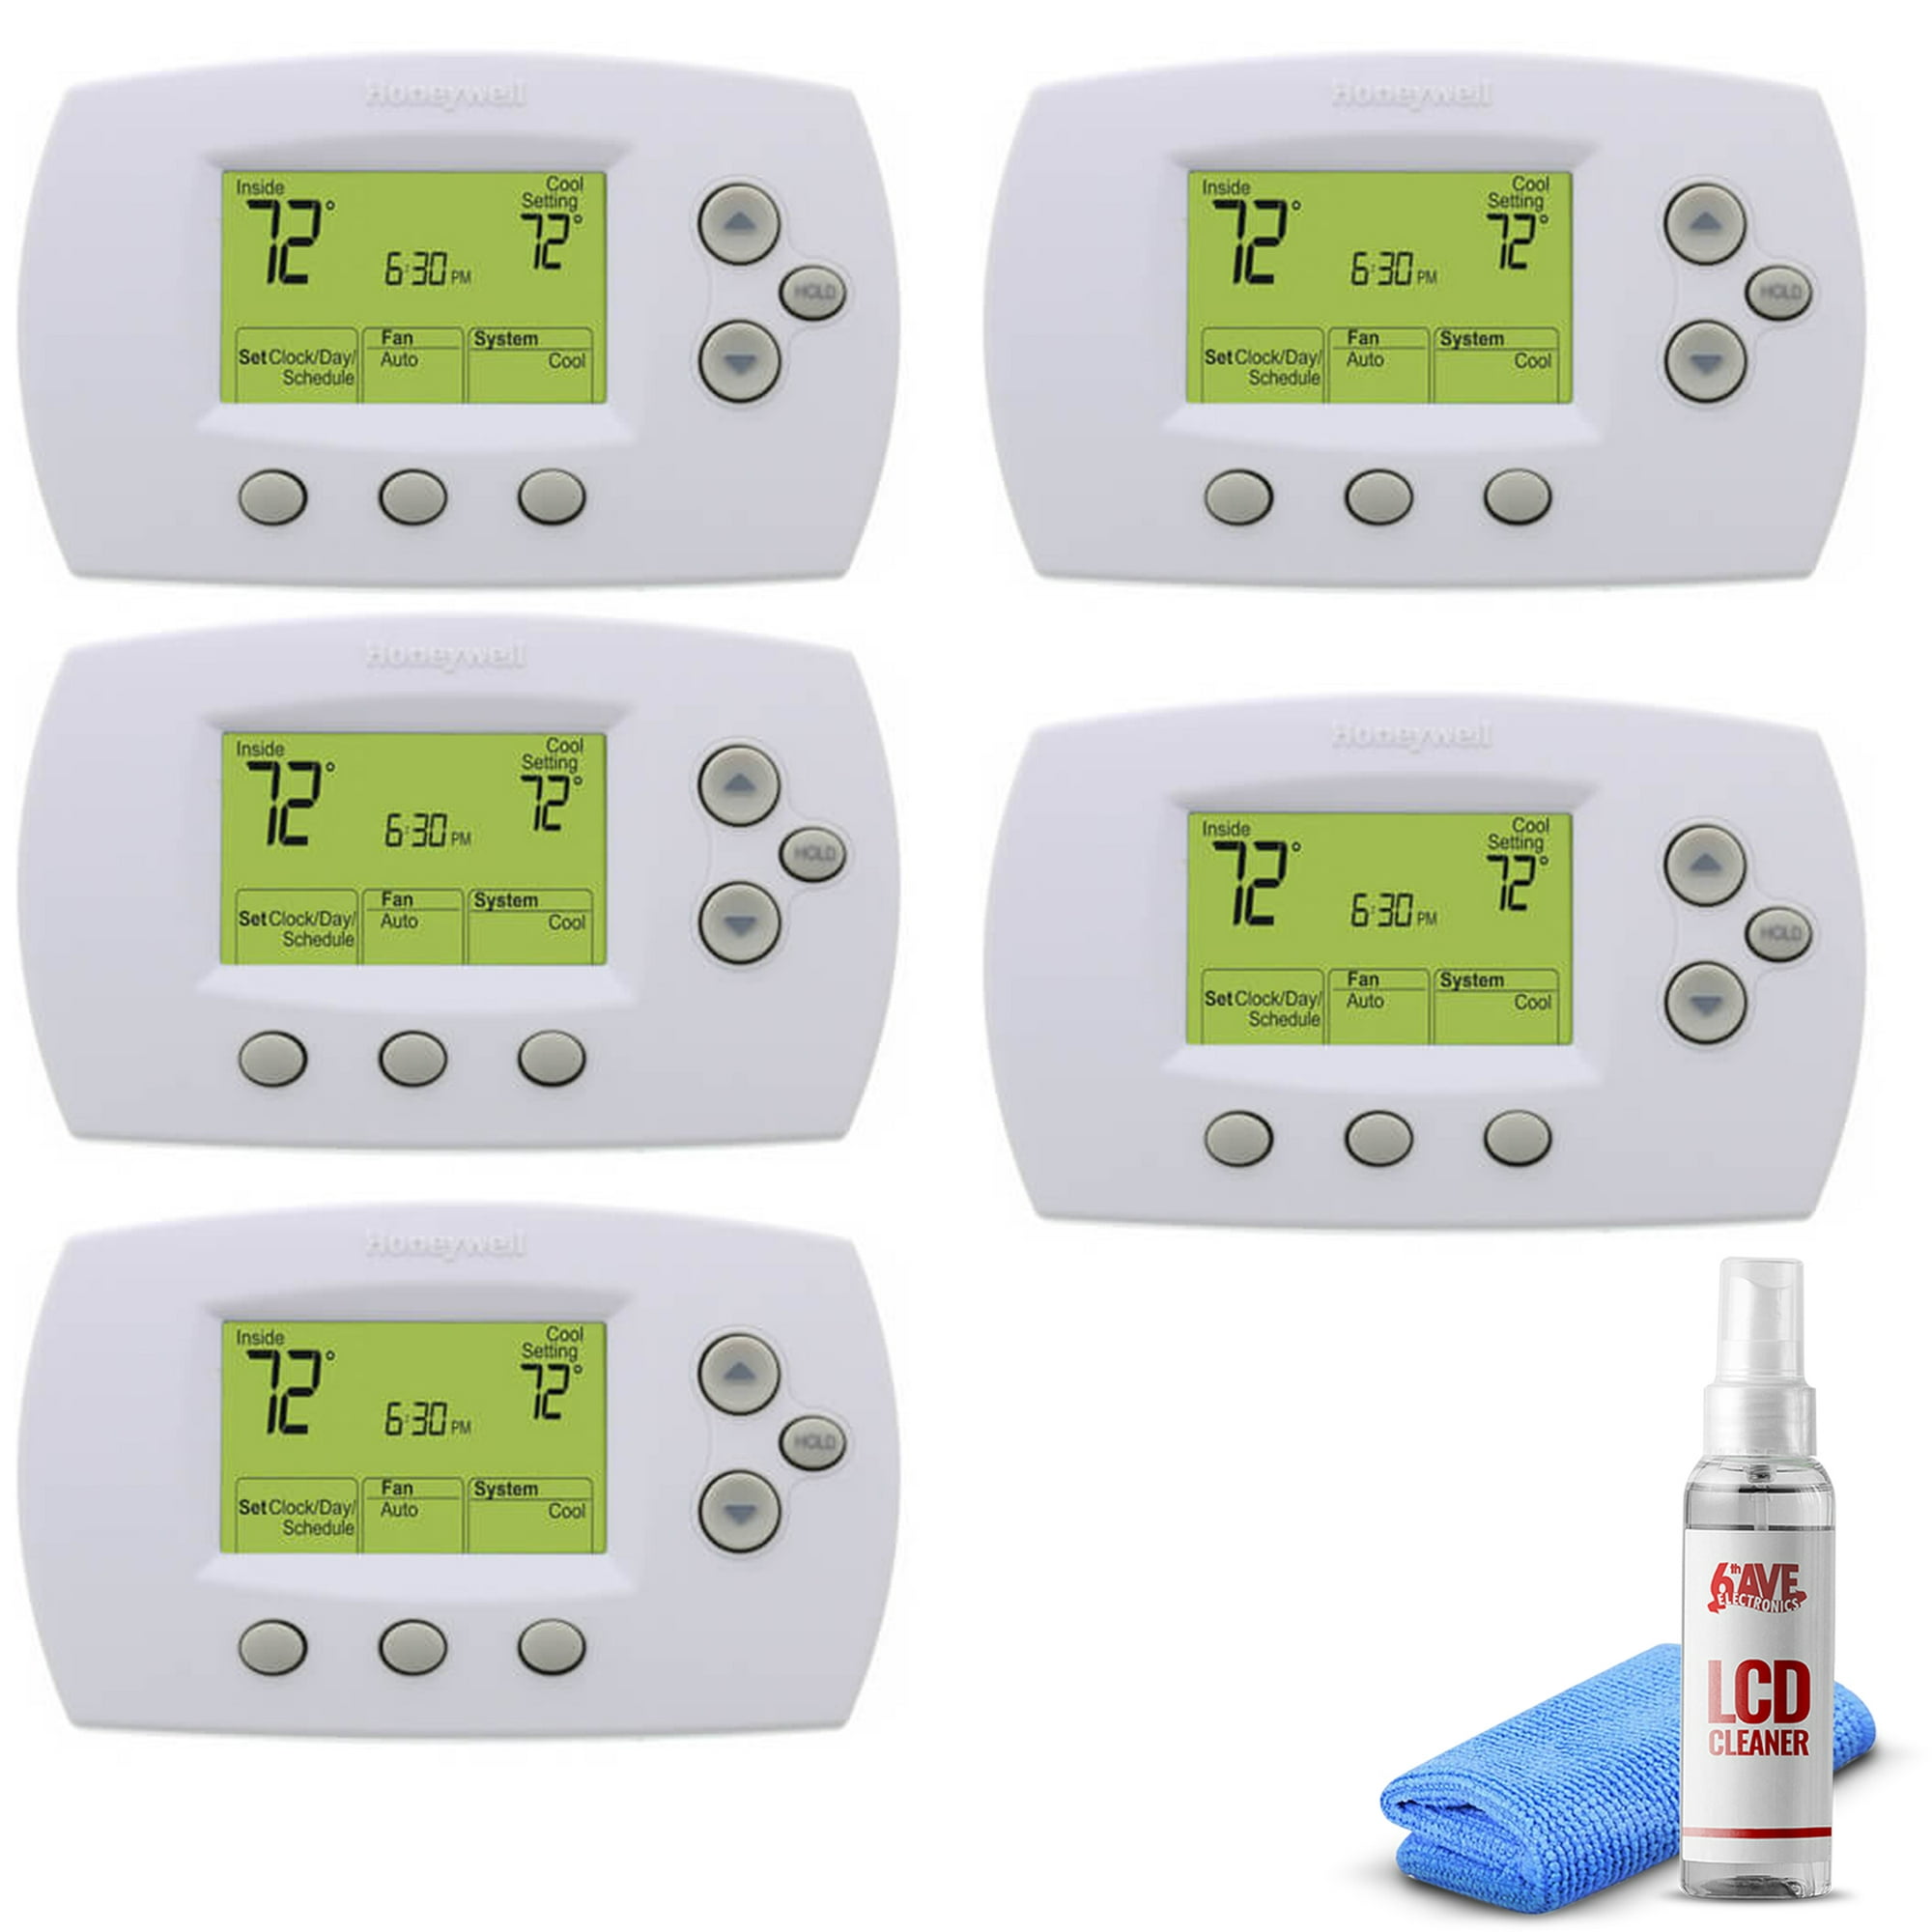 Termostato programable de la pompa de calor de 5-1-1 día para el hogar  hasta 2 calor y 1 frío